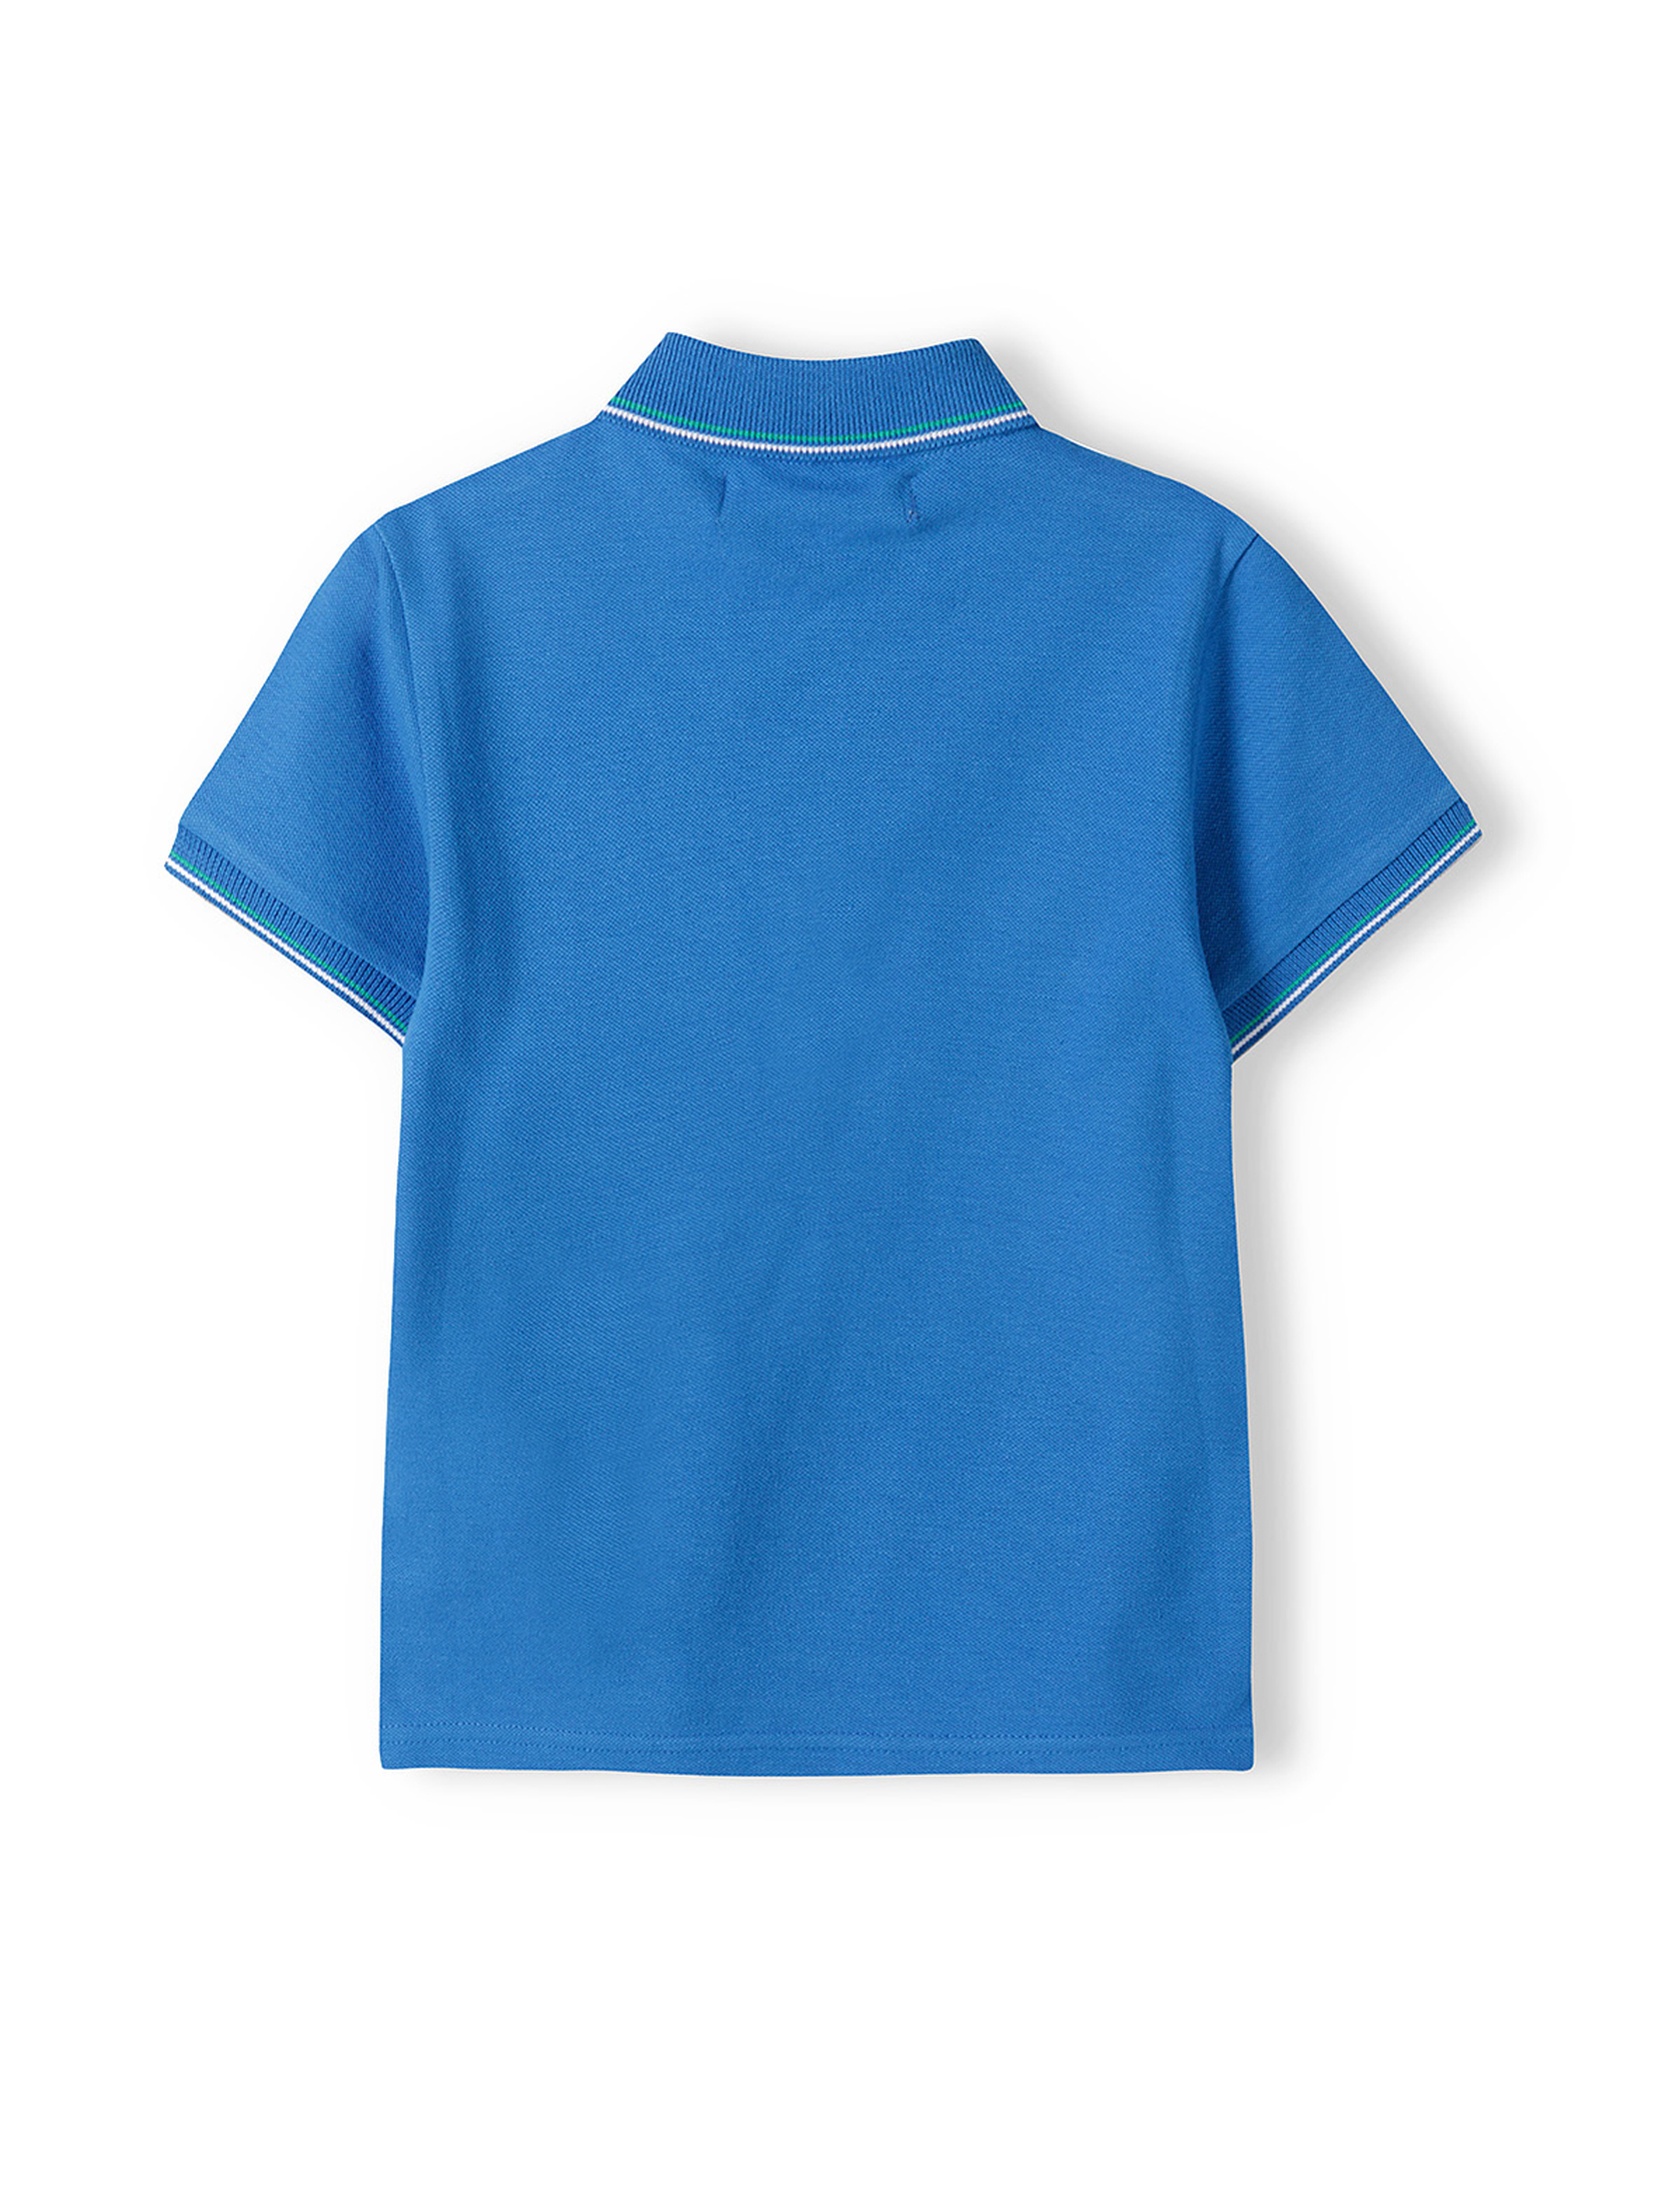 Bluzka polo dla niemowlaka z krótkim rękawem- niebieska